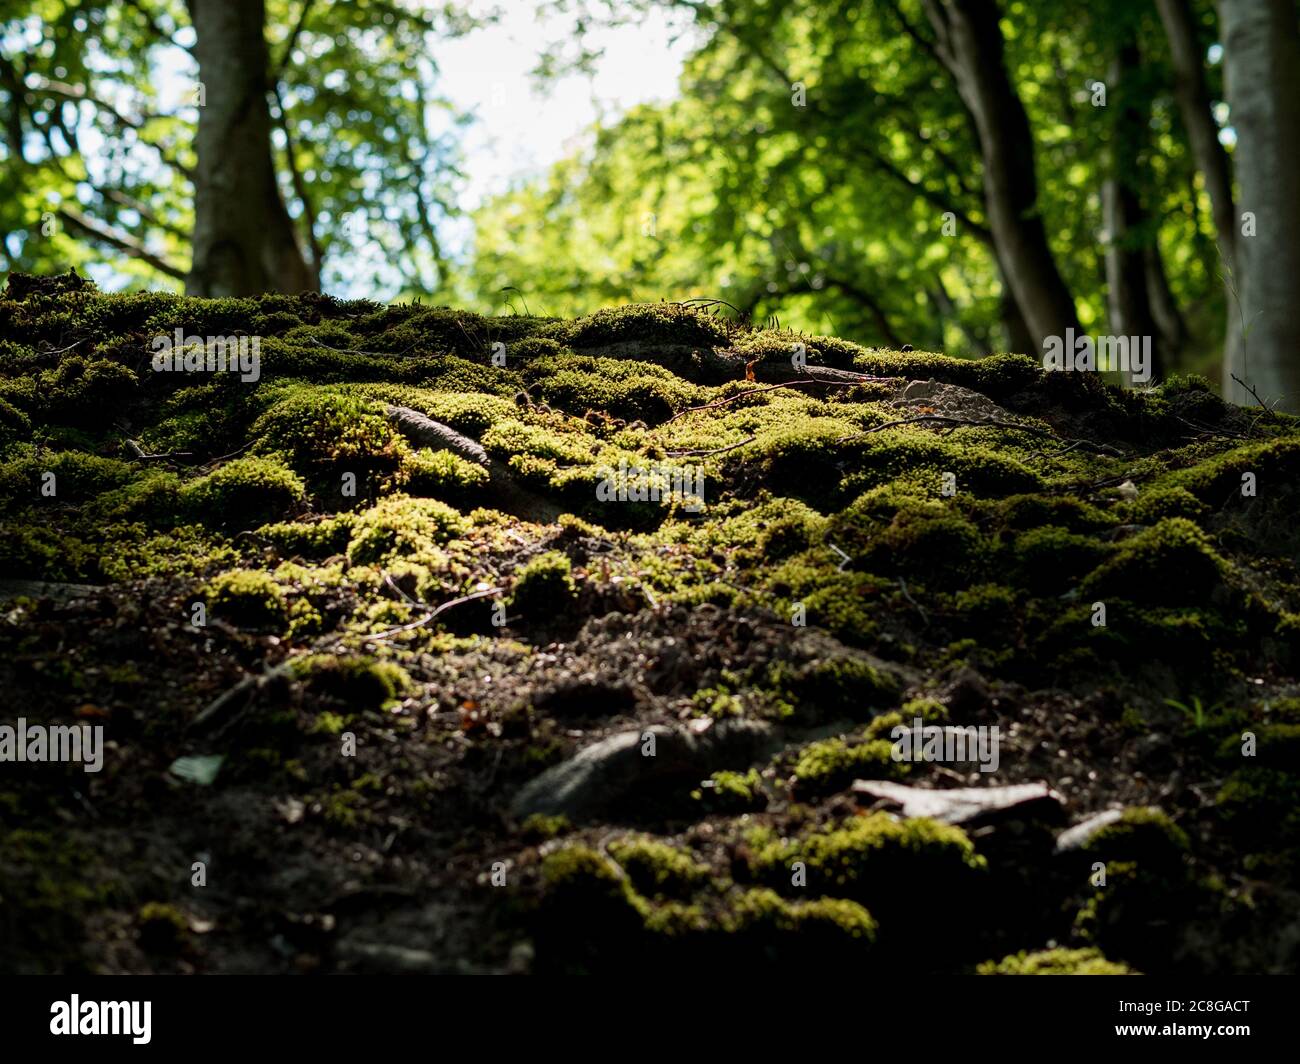 mit Moos bedeckter Waldboden von einem Sonnenstrahl angeleuchtet idylischer Wald naturbelassene Landstaft moos-Covered im Nationalpark Jasmund Rügen Foto de stock